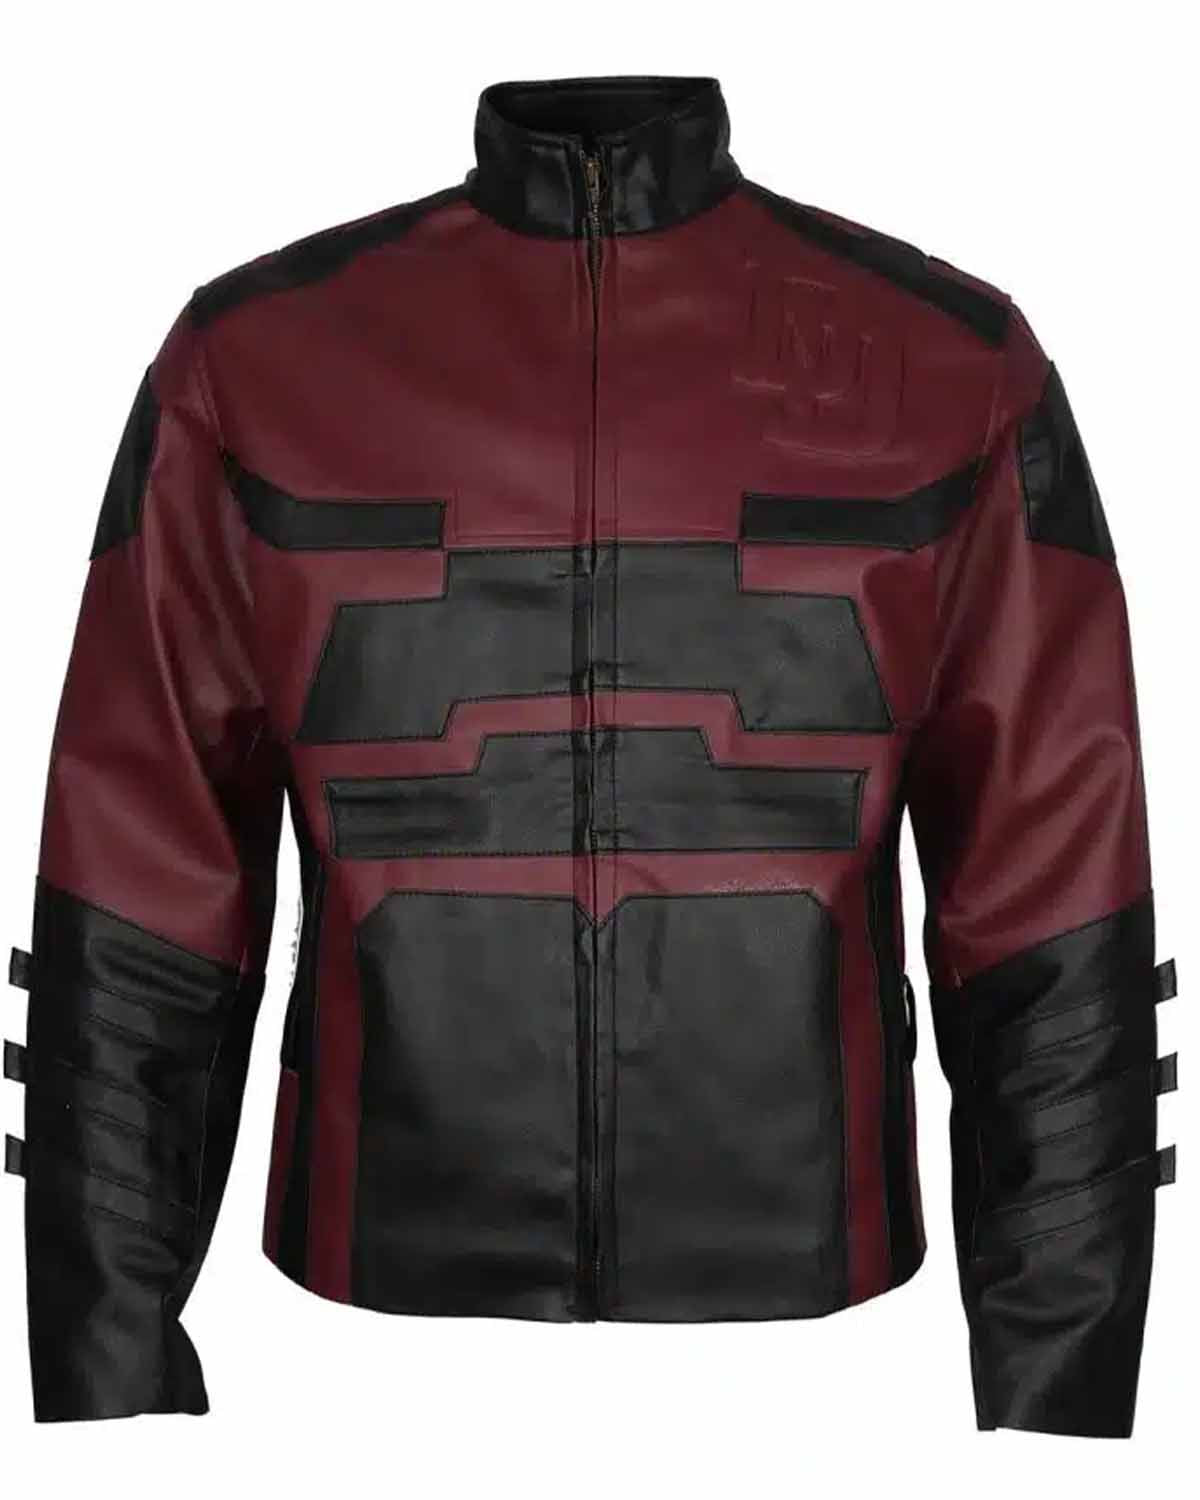 Elite Charlie Cox Daredevil Maroon Leather Jacket